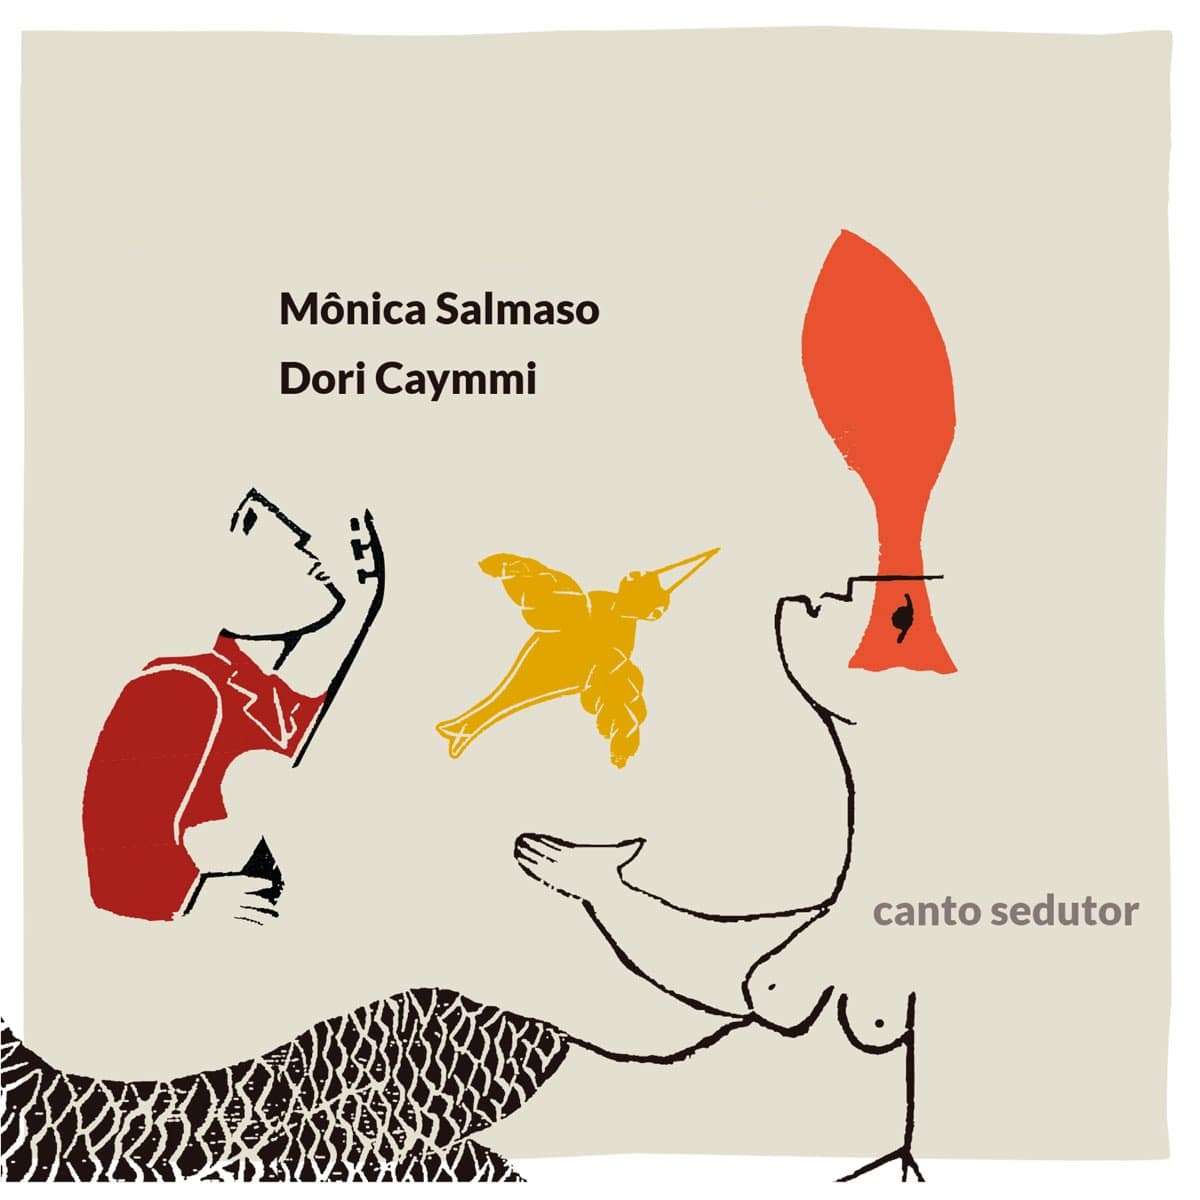 revistaprosaversoearte.com - 'Canto sedutor', álbum de Mônica Salmaso e Dori Caymmi